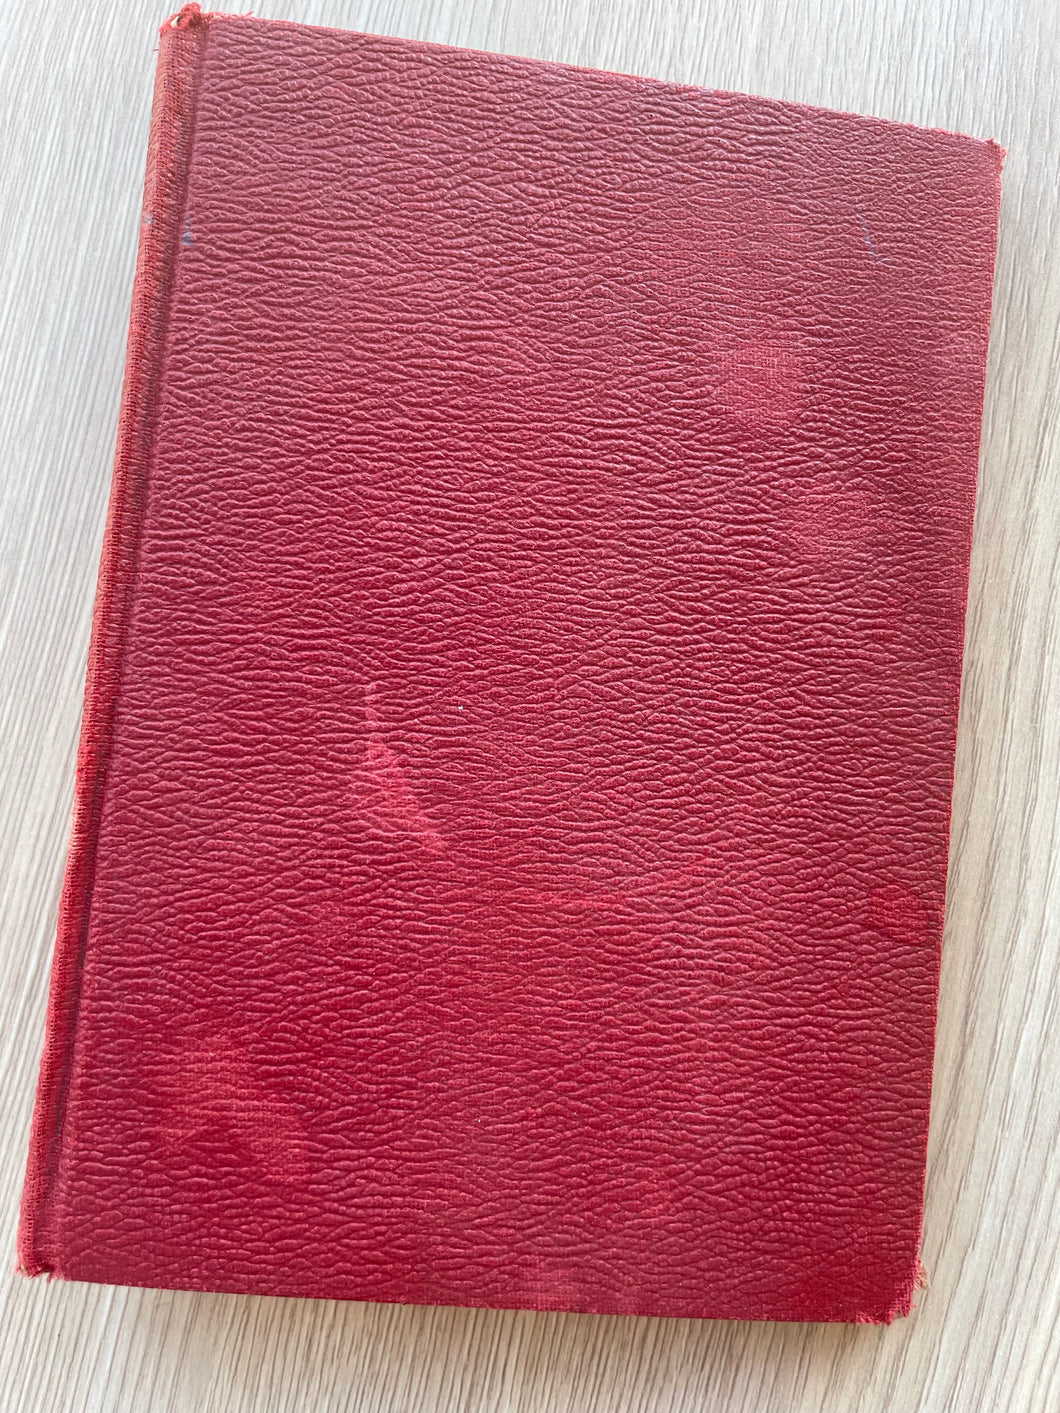 PRE-ORDER Sketchbook - Solid Red (textured)